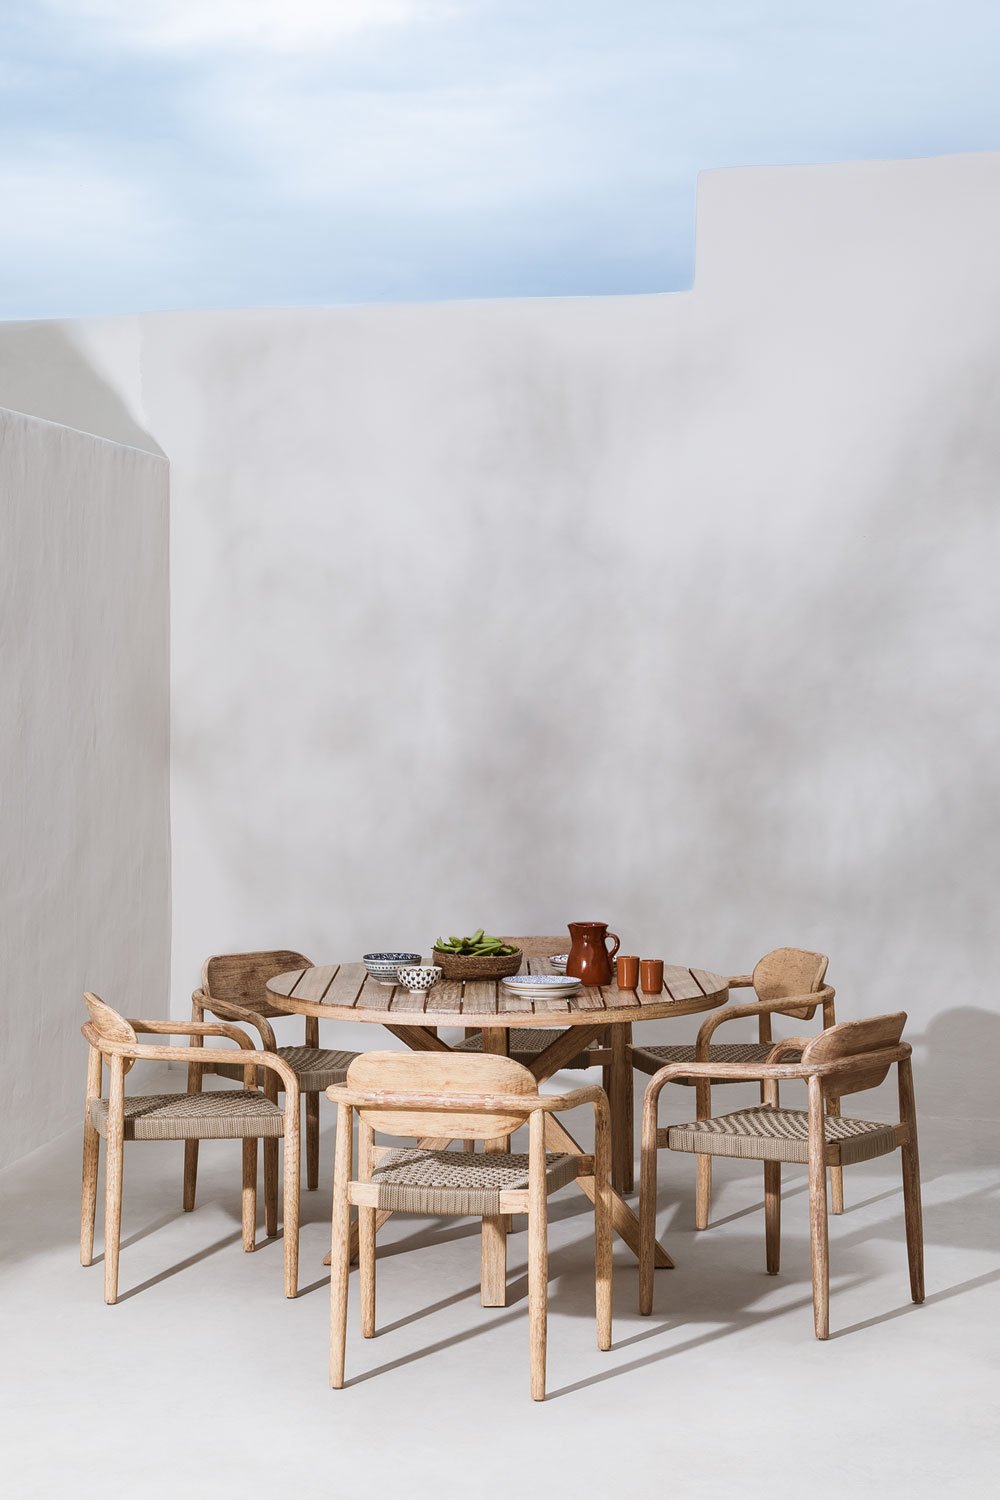 Set van ronde tafel (Ø120 cm) en 6 tuinstoelen met armleuningen in hout Naele , galerij beeld 1